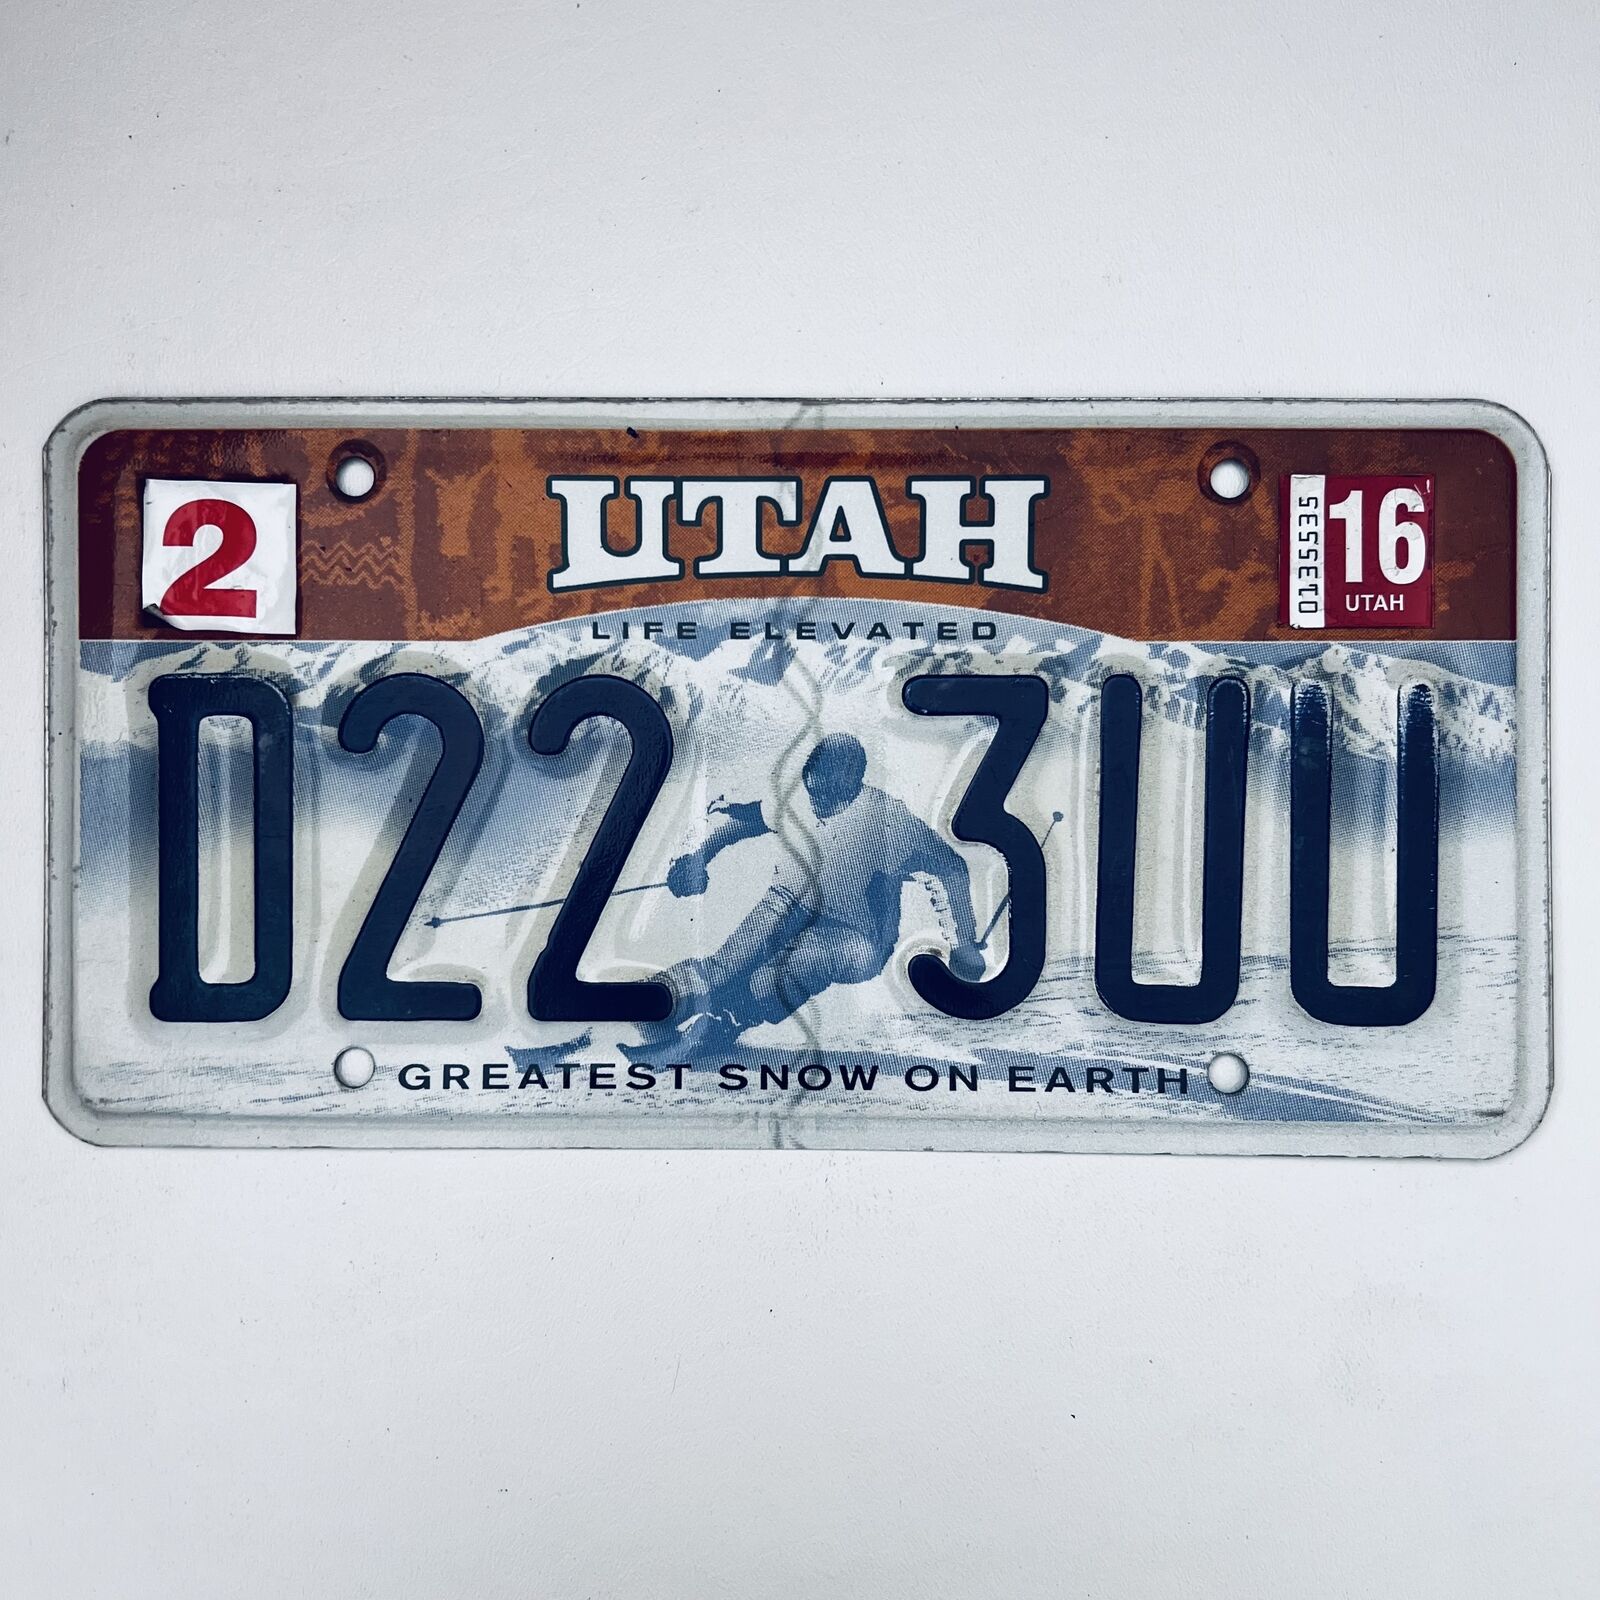 2016 United States Utah Greatest Snow On Earth Passenger License Plate D22 3UU